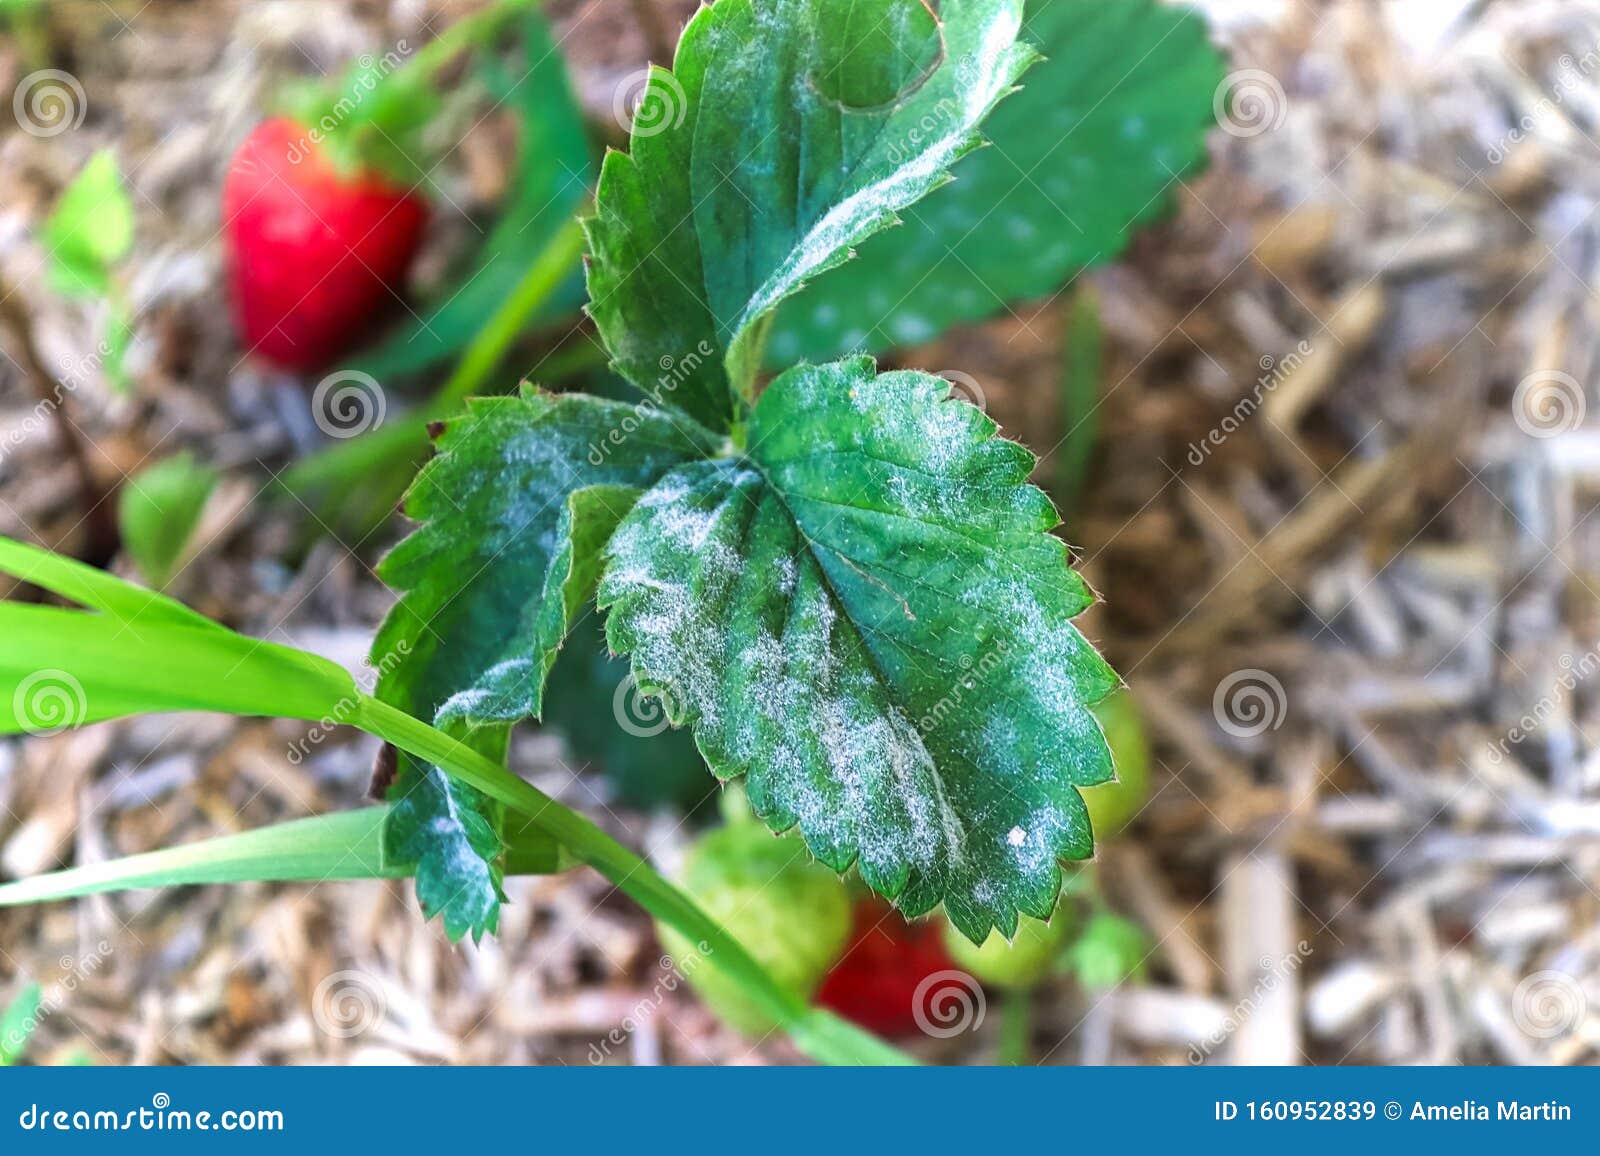 closeup of powdery mildew on a strawberry leaf